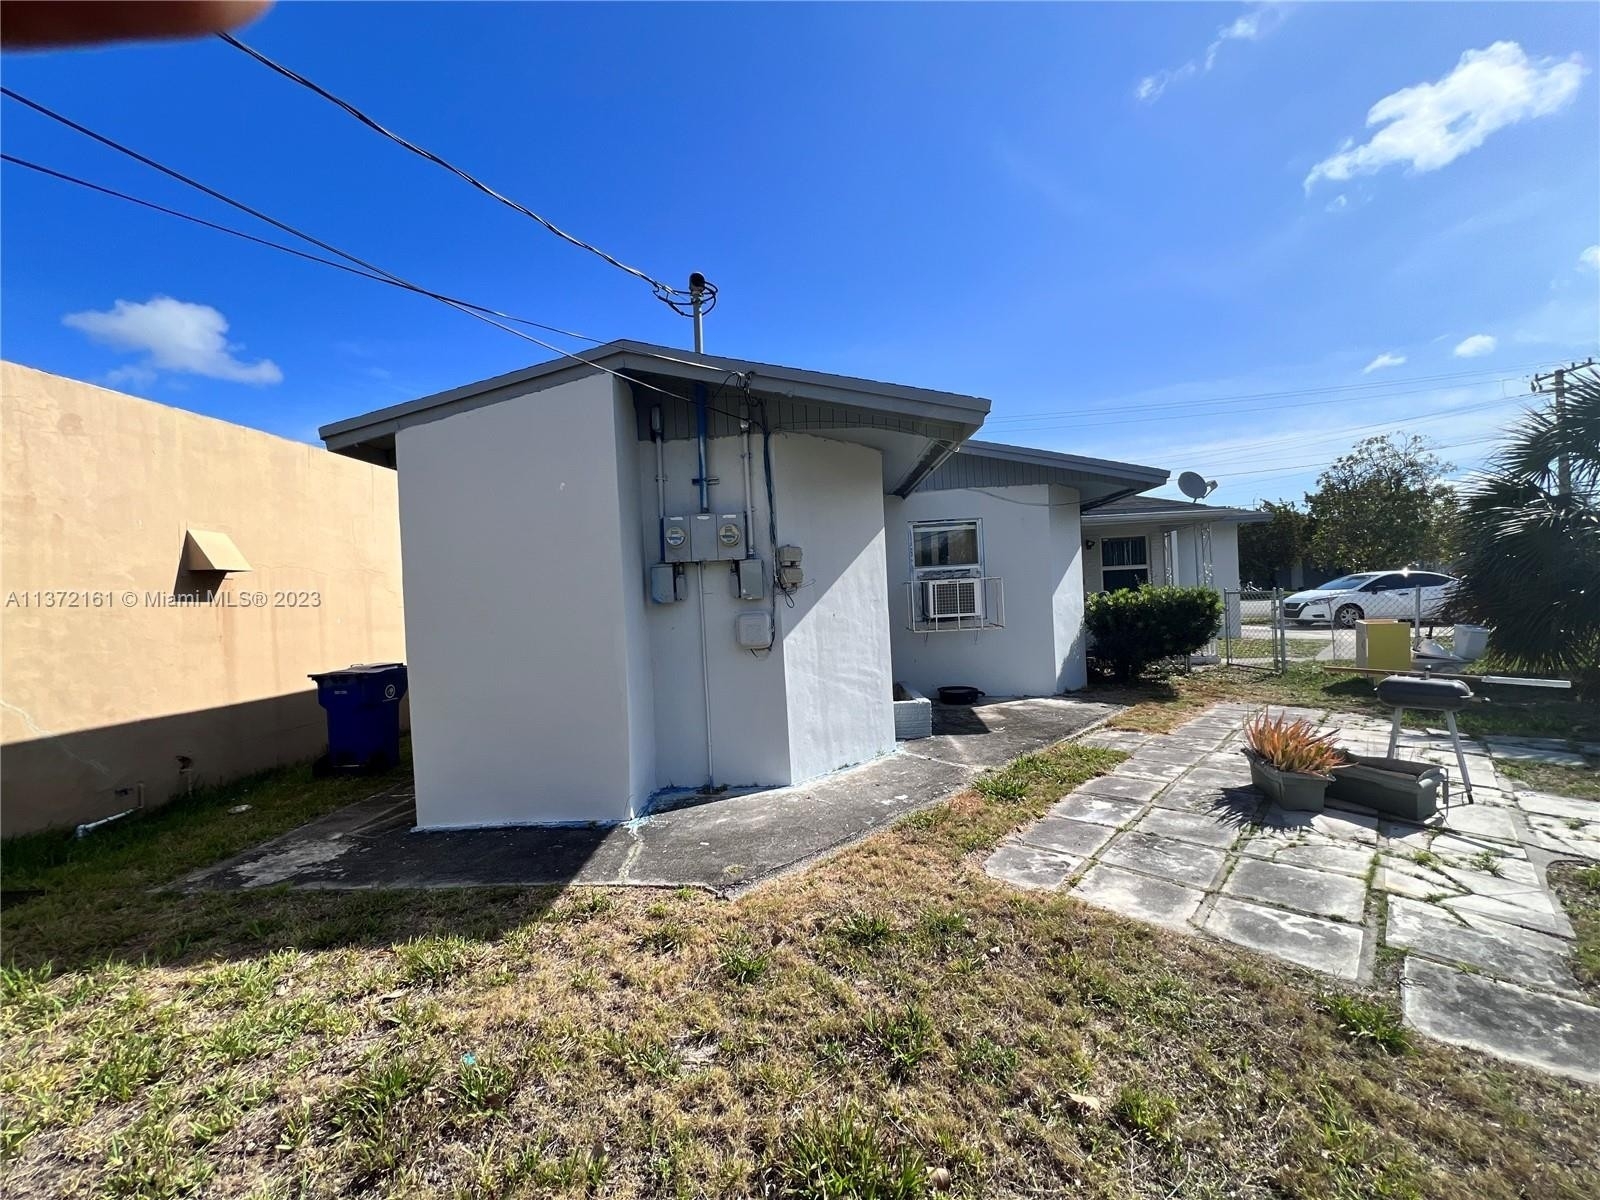 Property at Franklin Park, Fort Lauderdale, FL 33311